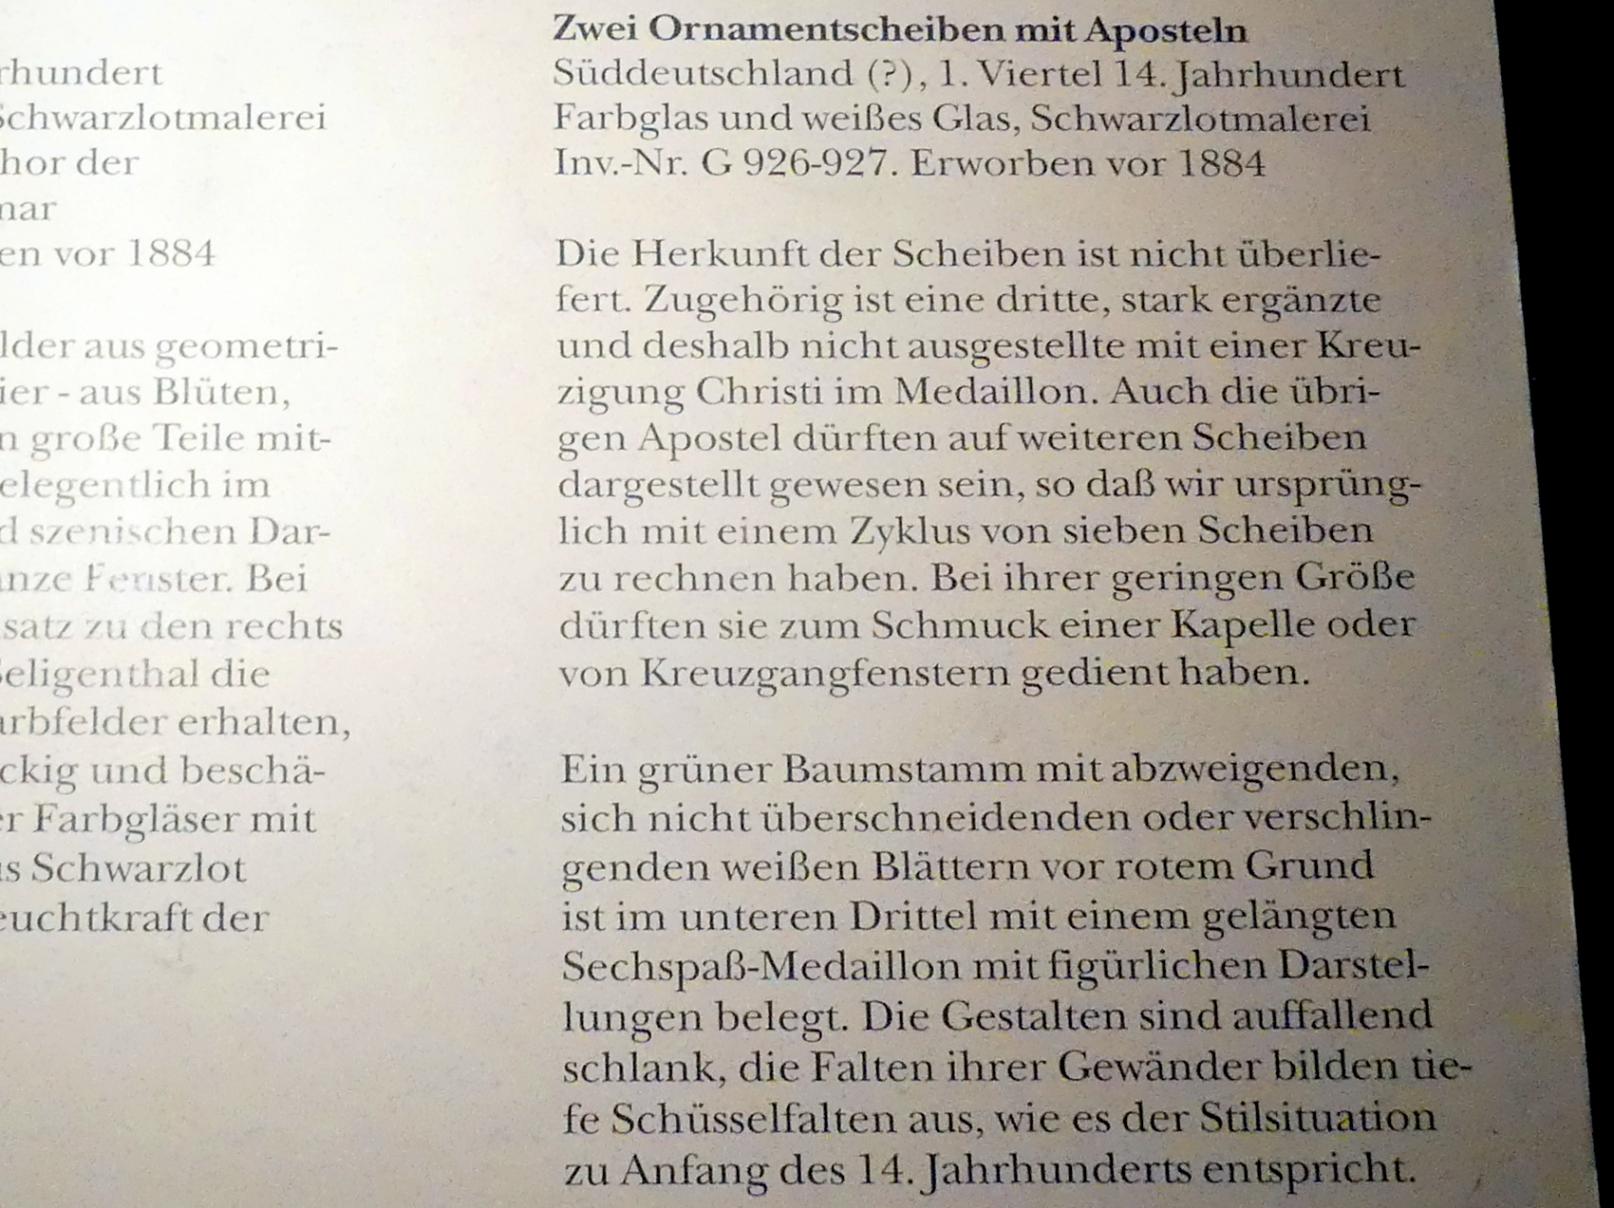 Zwei Ornamentscheiben mit Aposteln, München, Bayerisches Nationalmuseum, Saal 3, 1. Viertel 14. Jhd., Bild 2/2